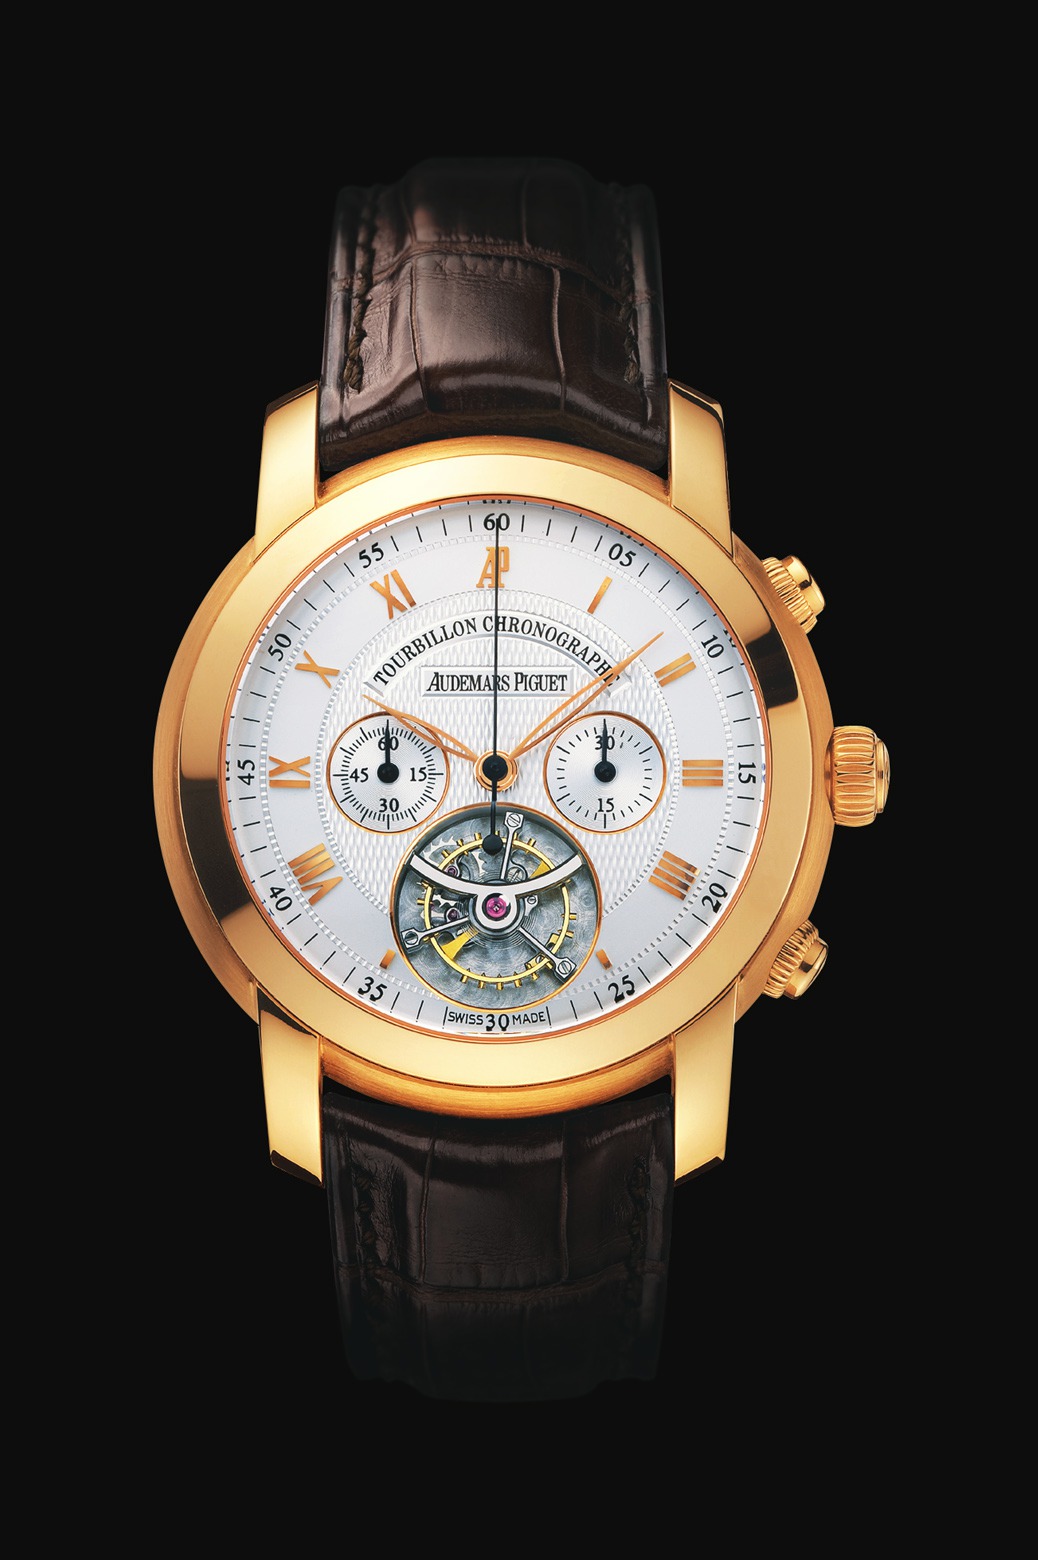 Audemars Piguet Jules Audemars Chronograph Tourbillon Pink Gold watch REF: 26010OR.OO.D088CR.01 - Click Image to Close